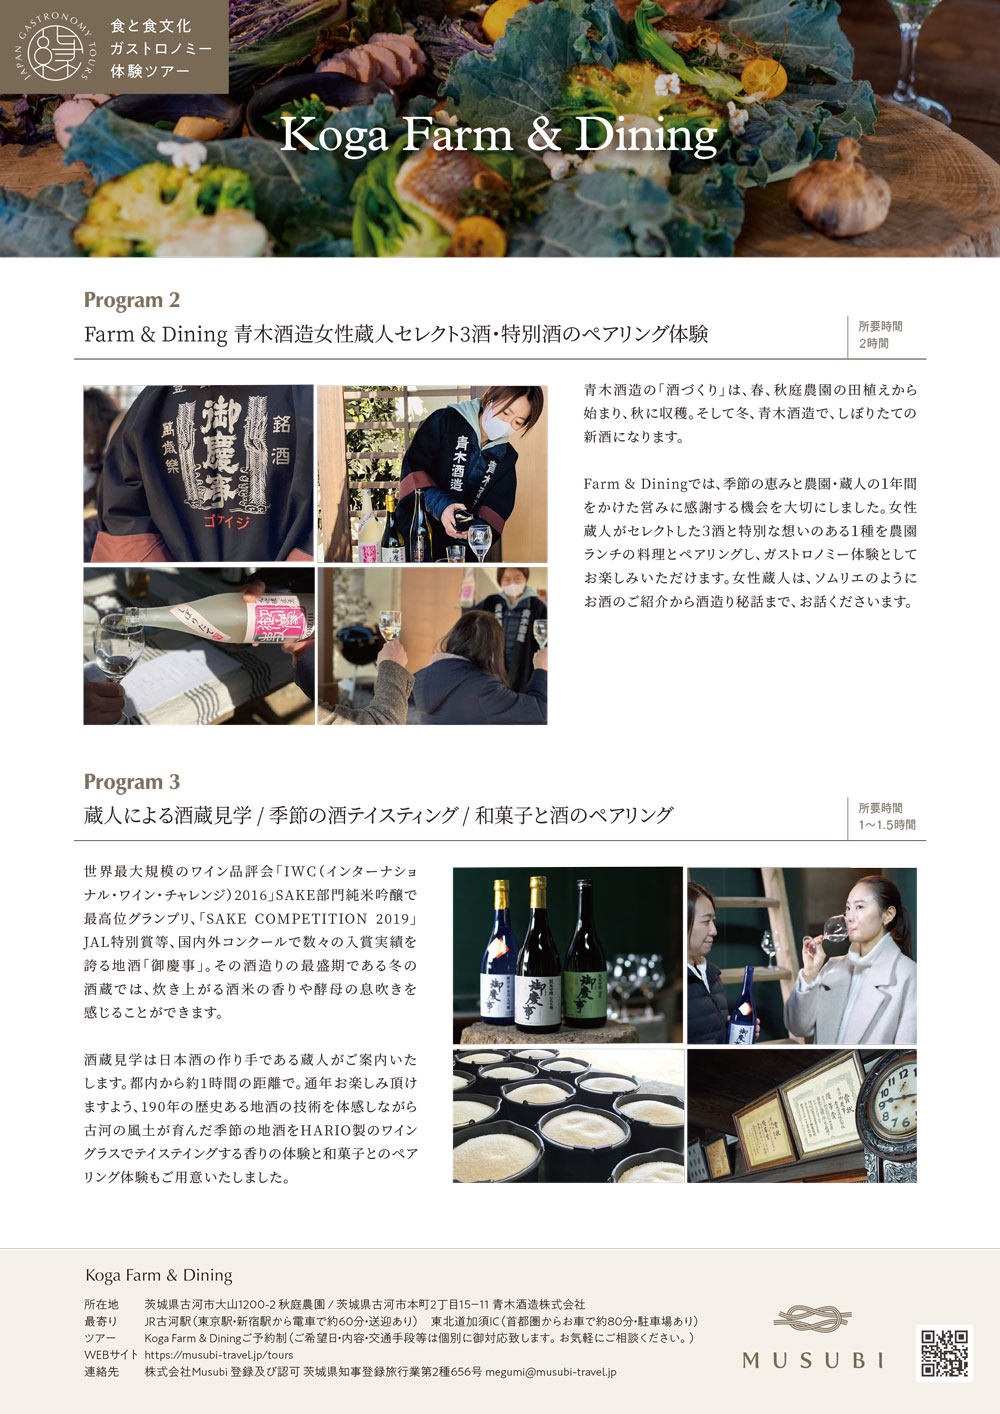 Aoki Sake Brewery